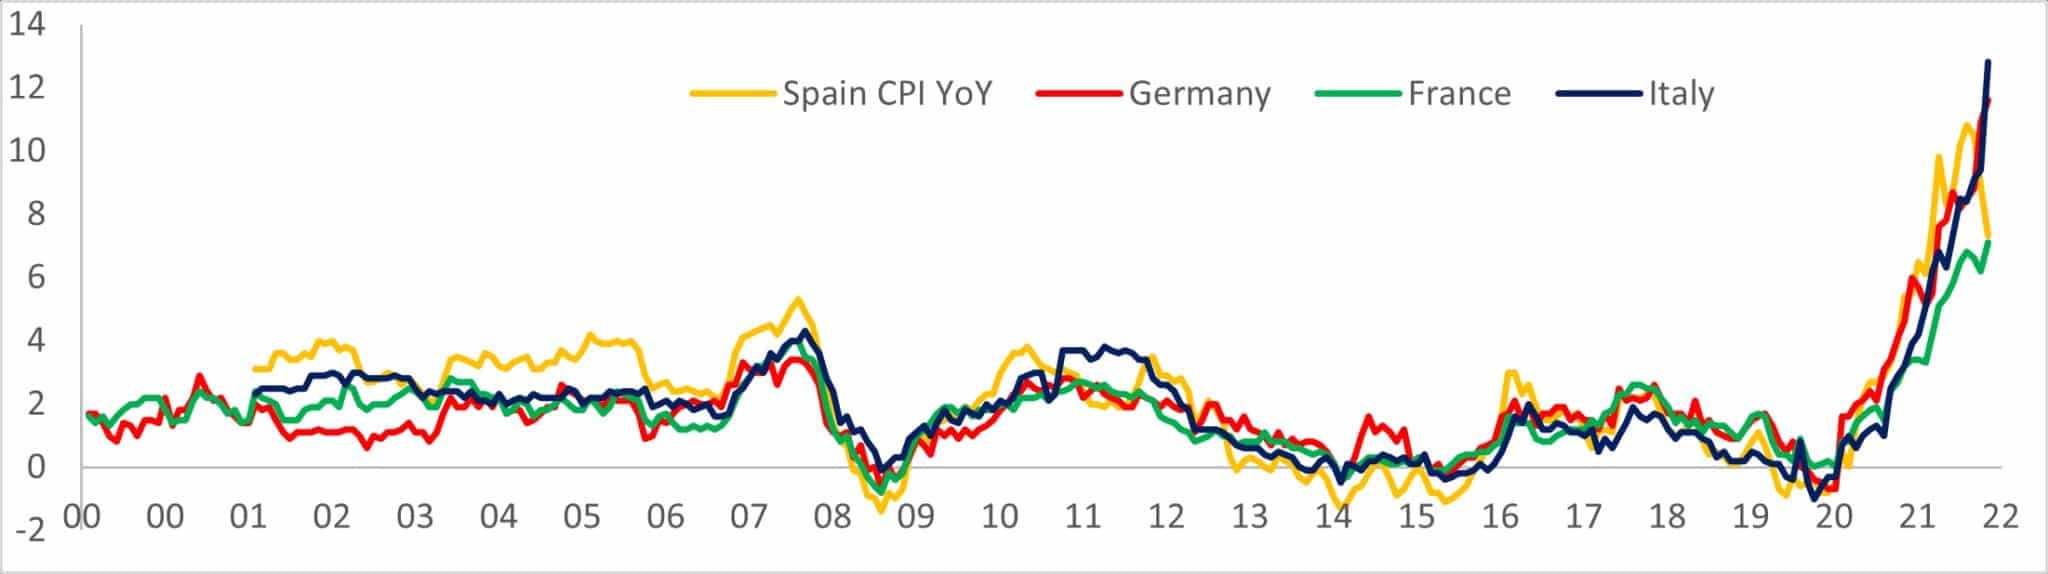 图表显示了2000年至2022年西班牙、德国、法国和意大利的CPI同比增长情况